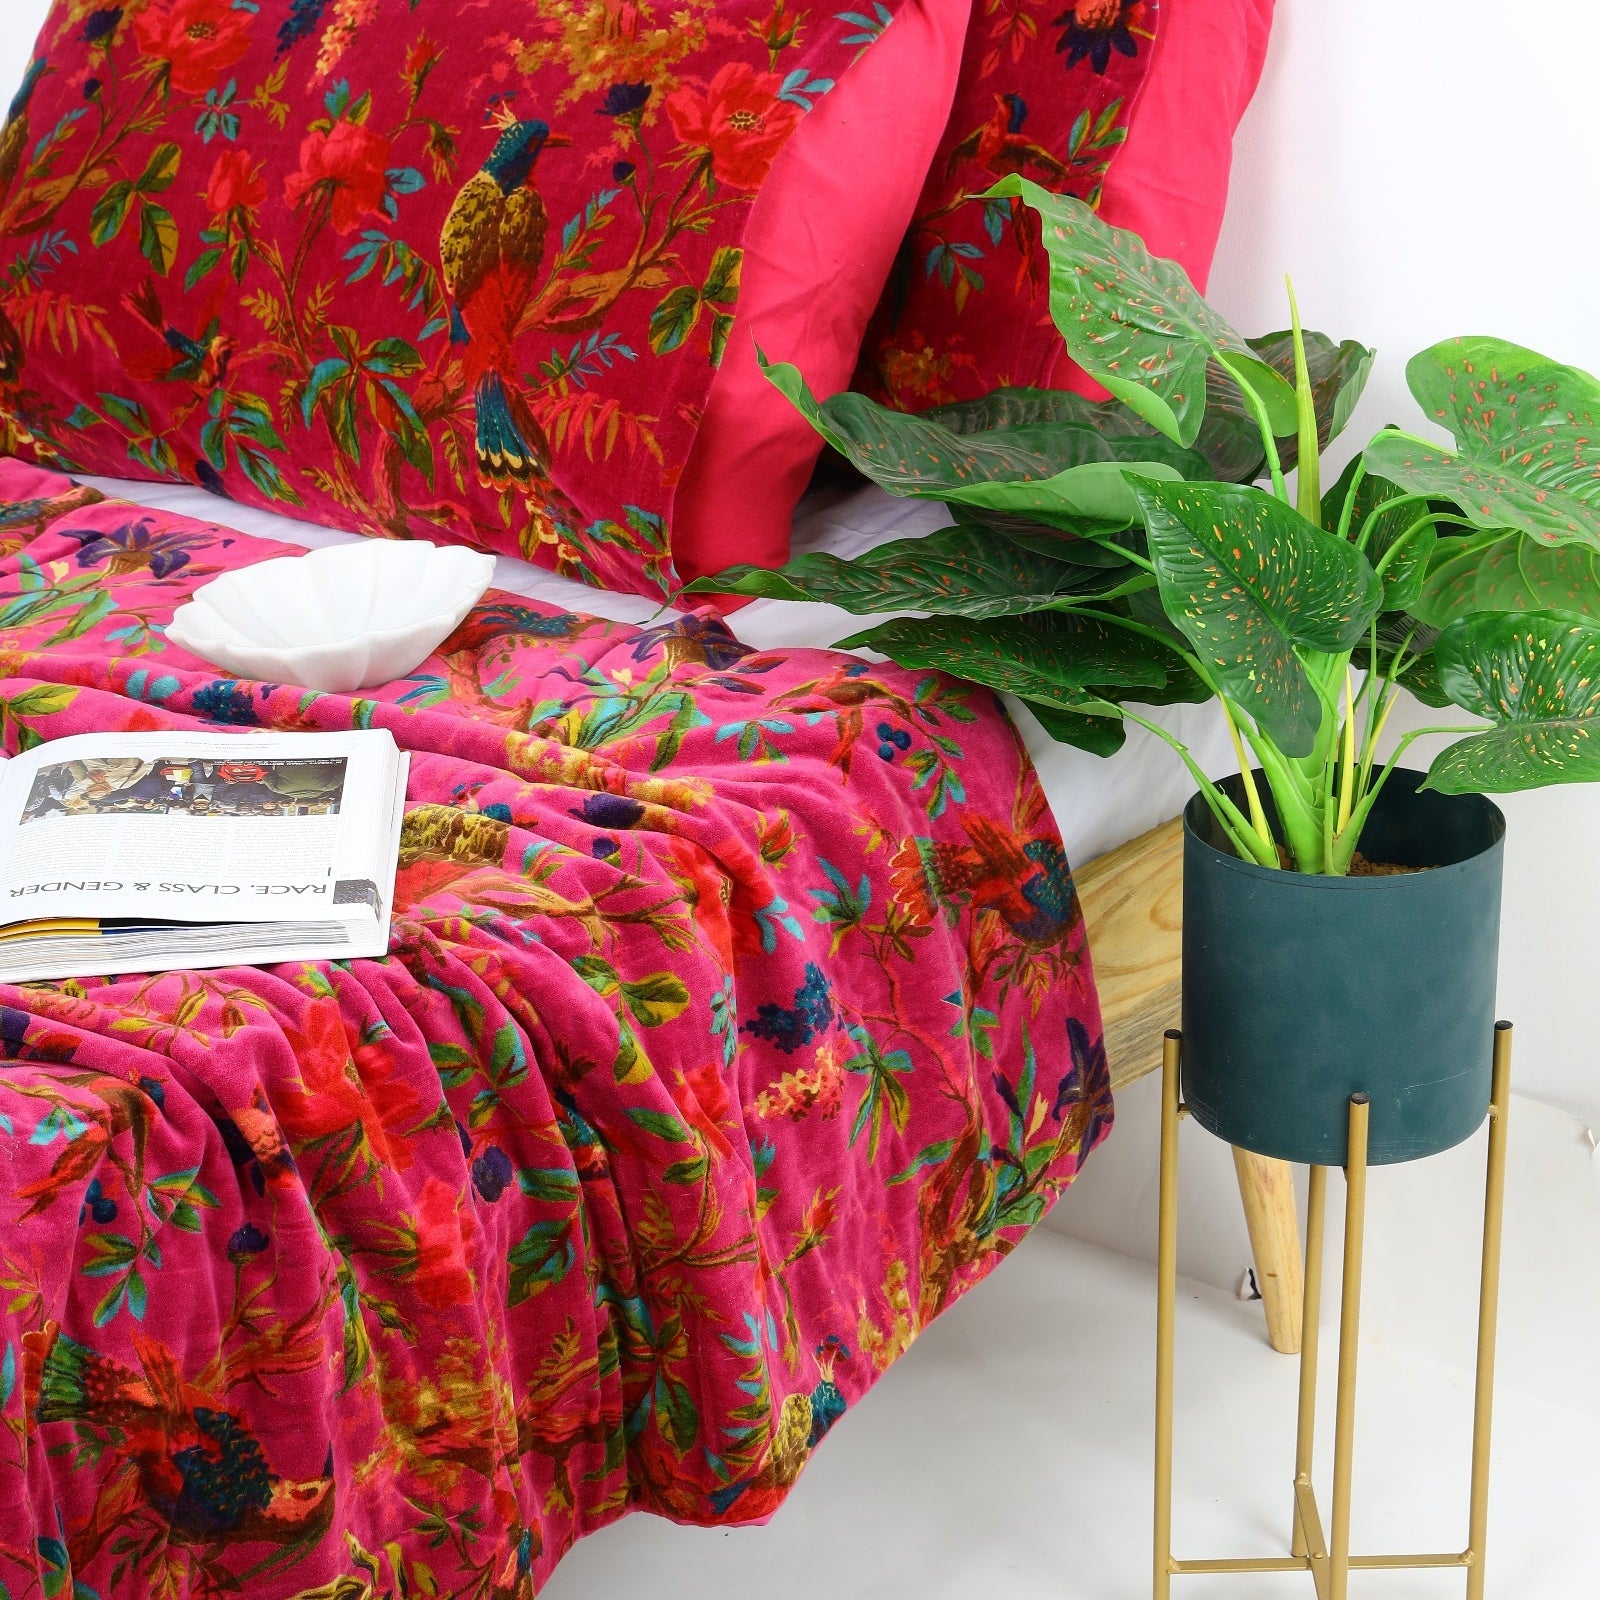 Velvet Frida Kantha Quilt Cotton Quilt Patchwork Quilt Handamade Red Velvet Quilt Floral Quilt Comforter Bedspread Blanket Indian Bedcover